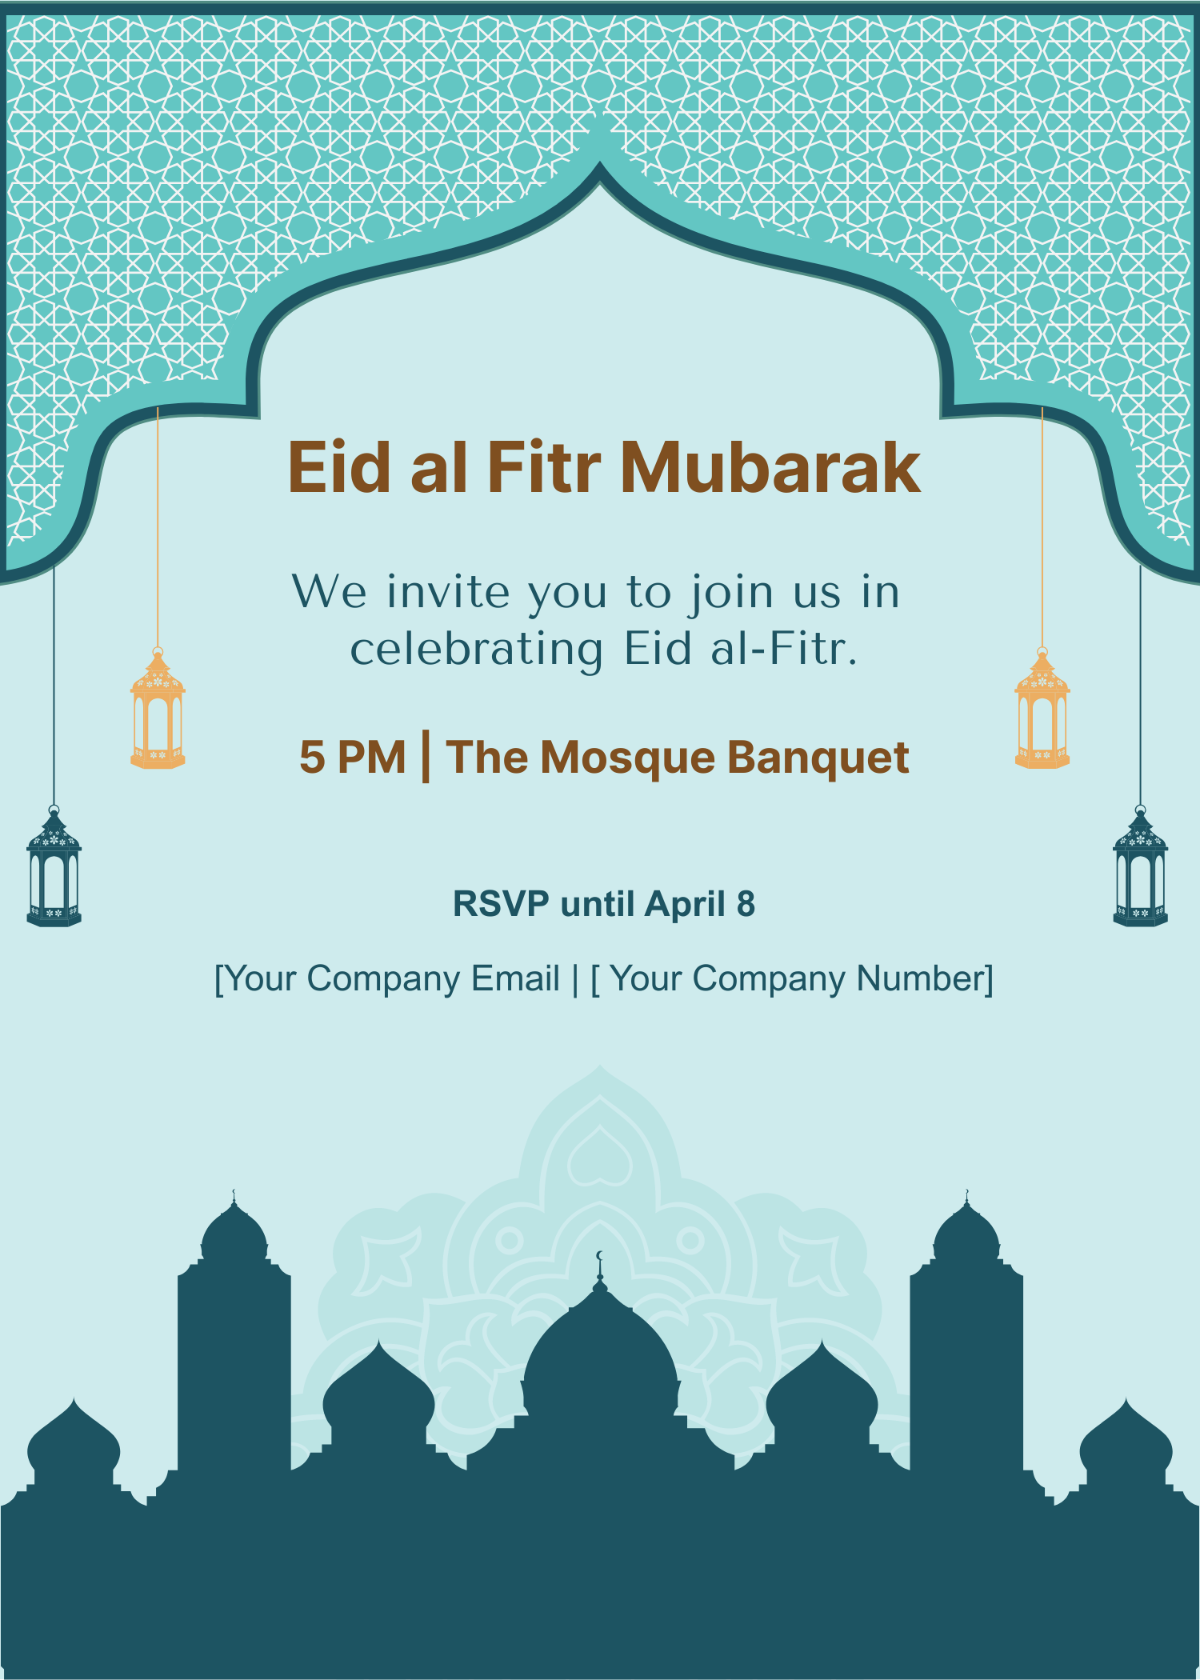 Eid al Fitr Mubarak Invitation Template